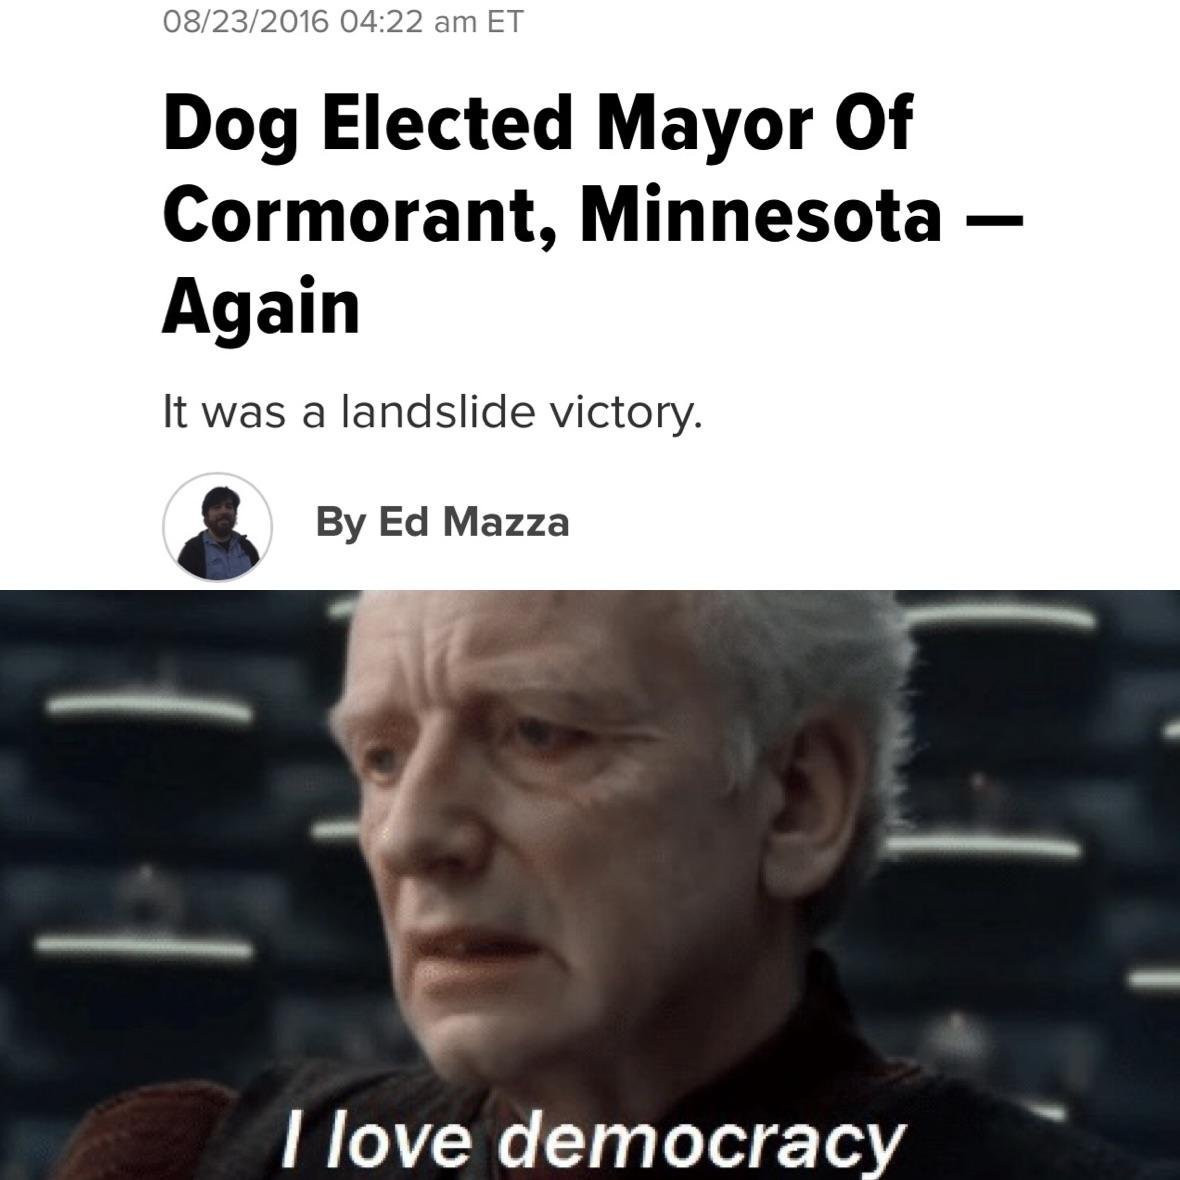 Люблю Демократию